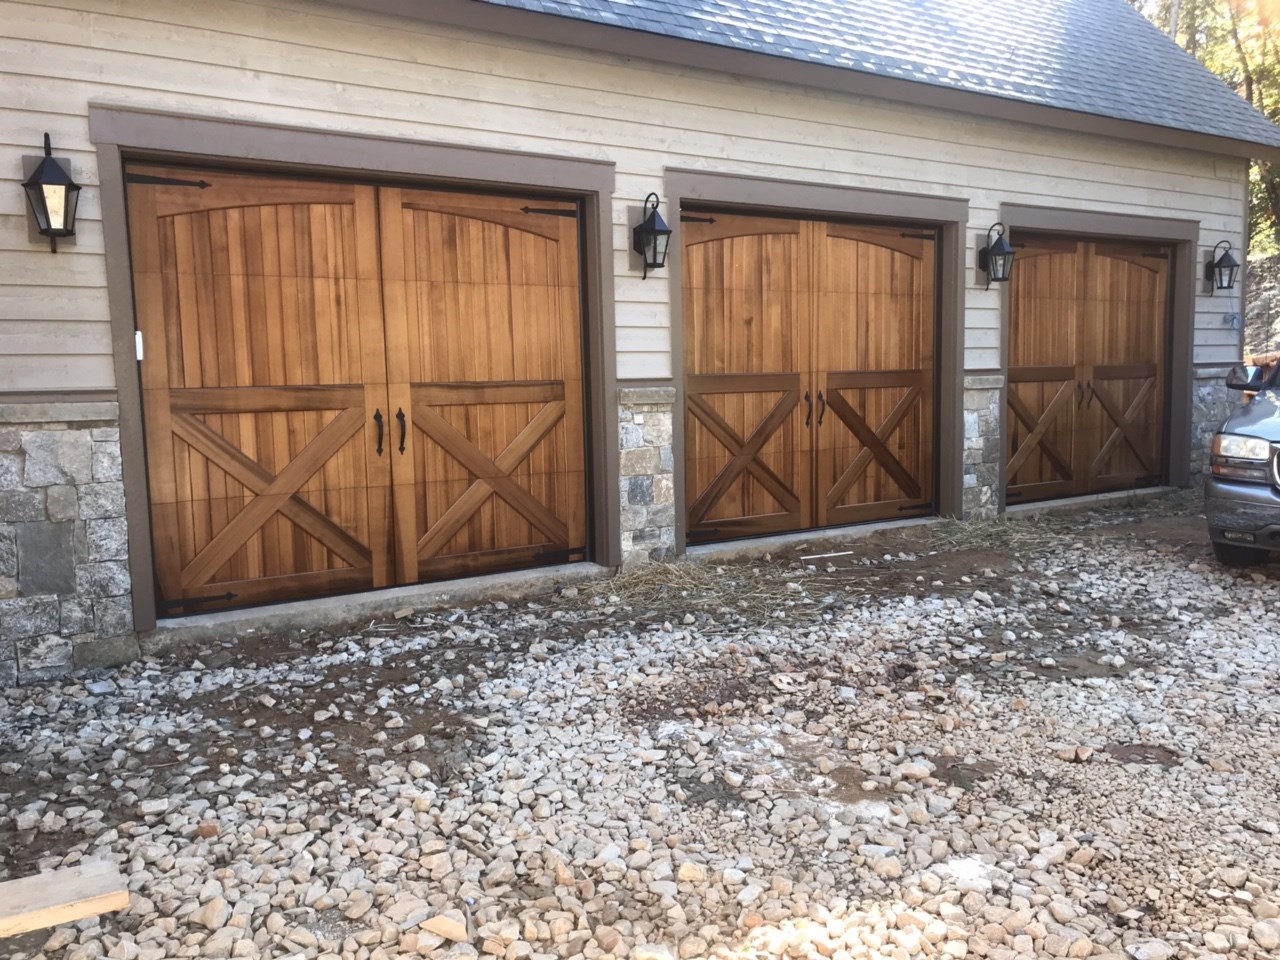 3-garage doors